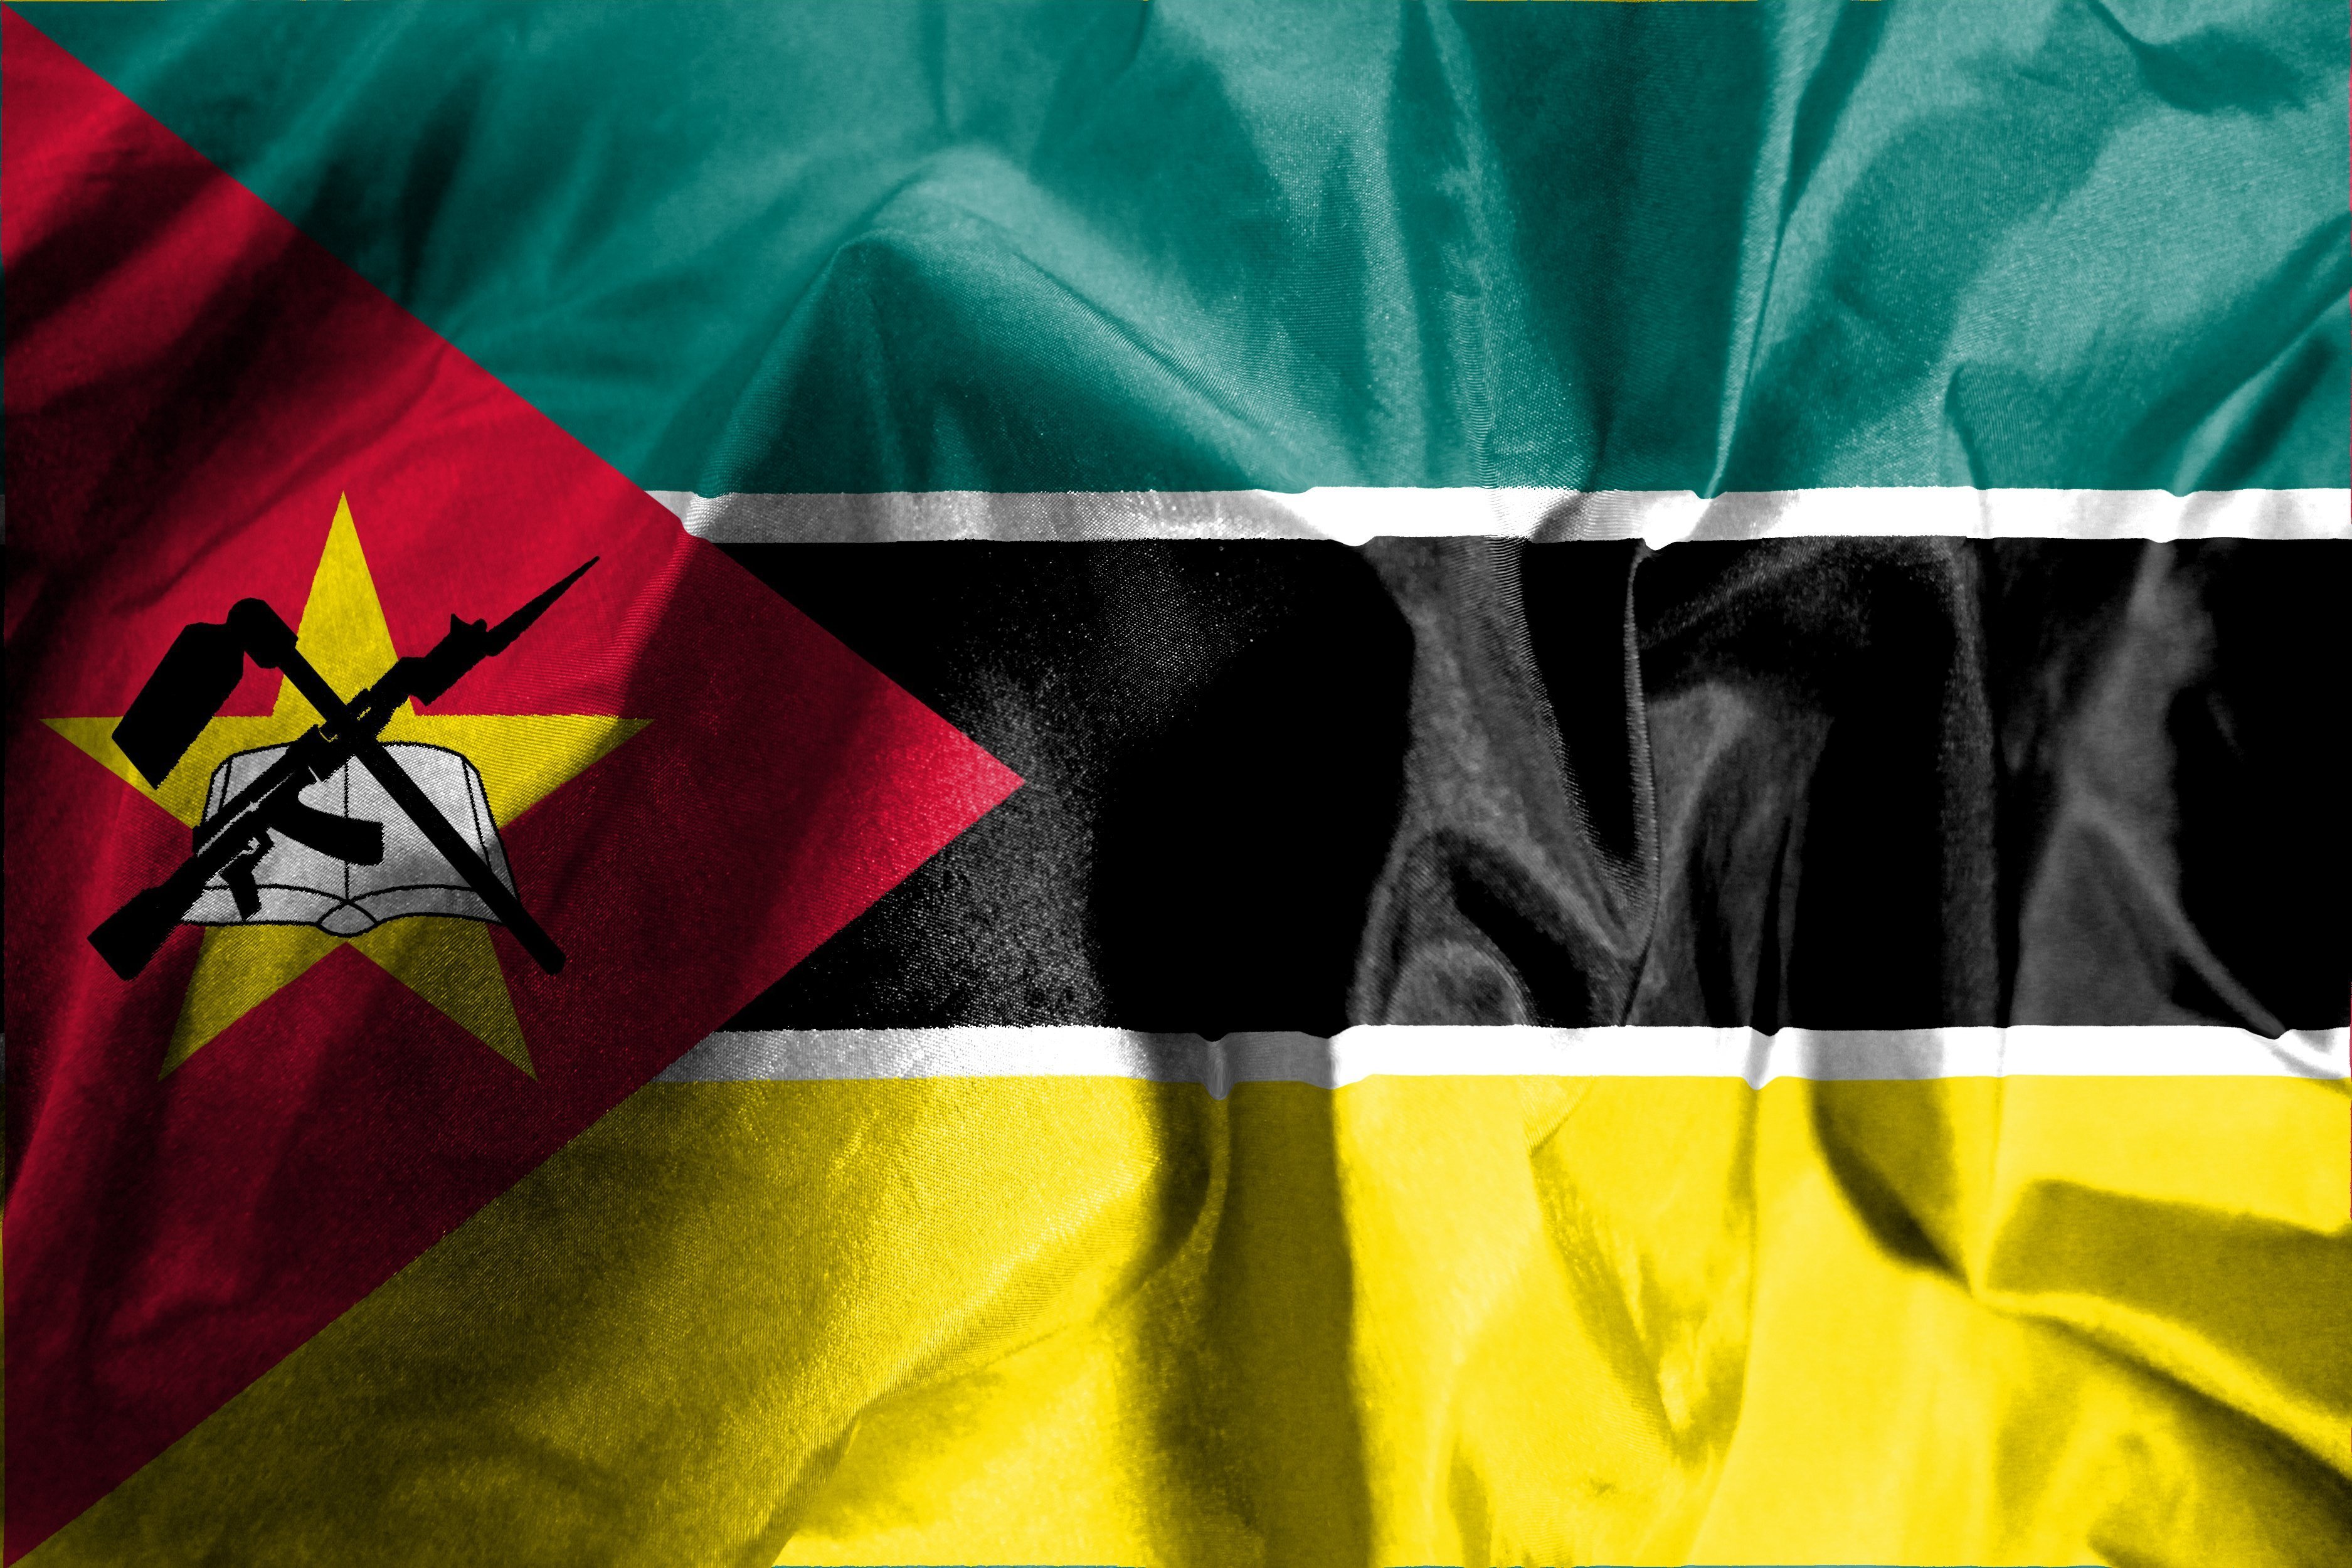 Credores rejeitam proposta de Moçambique sobre reestruturação da dívida pública